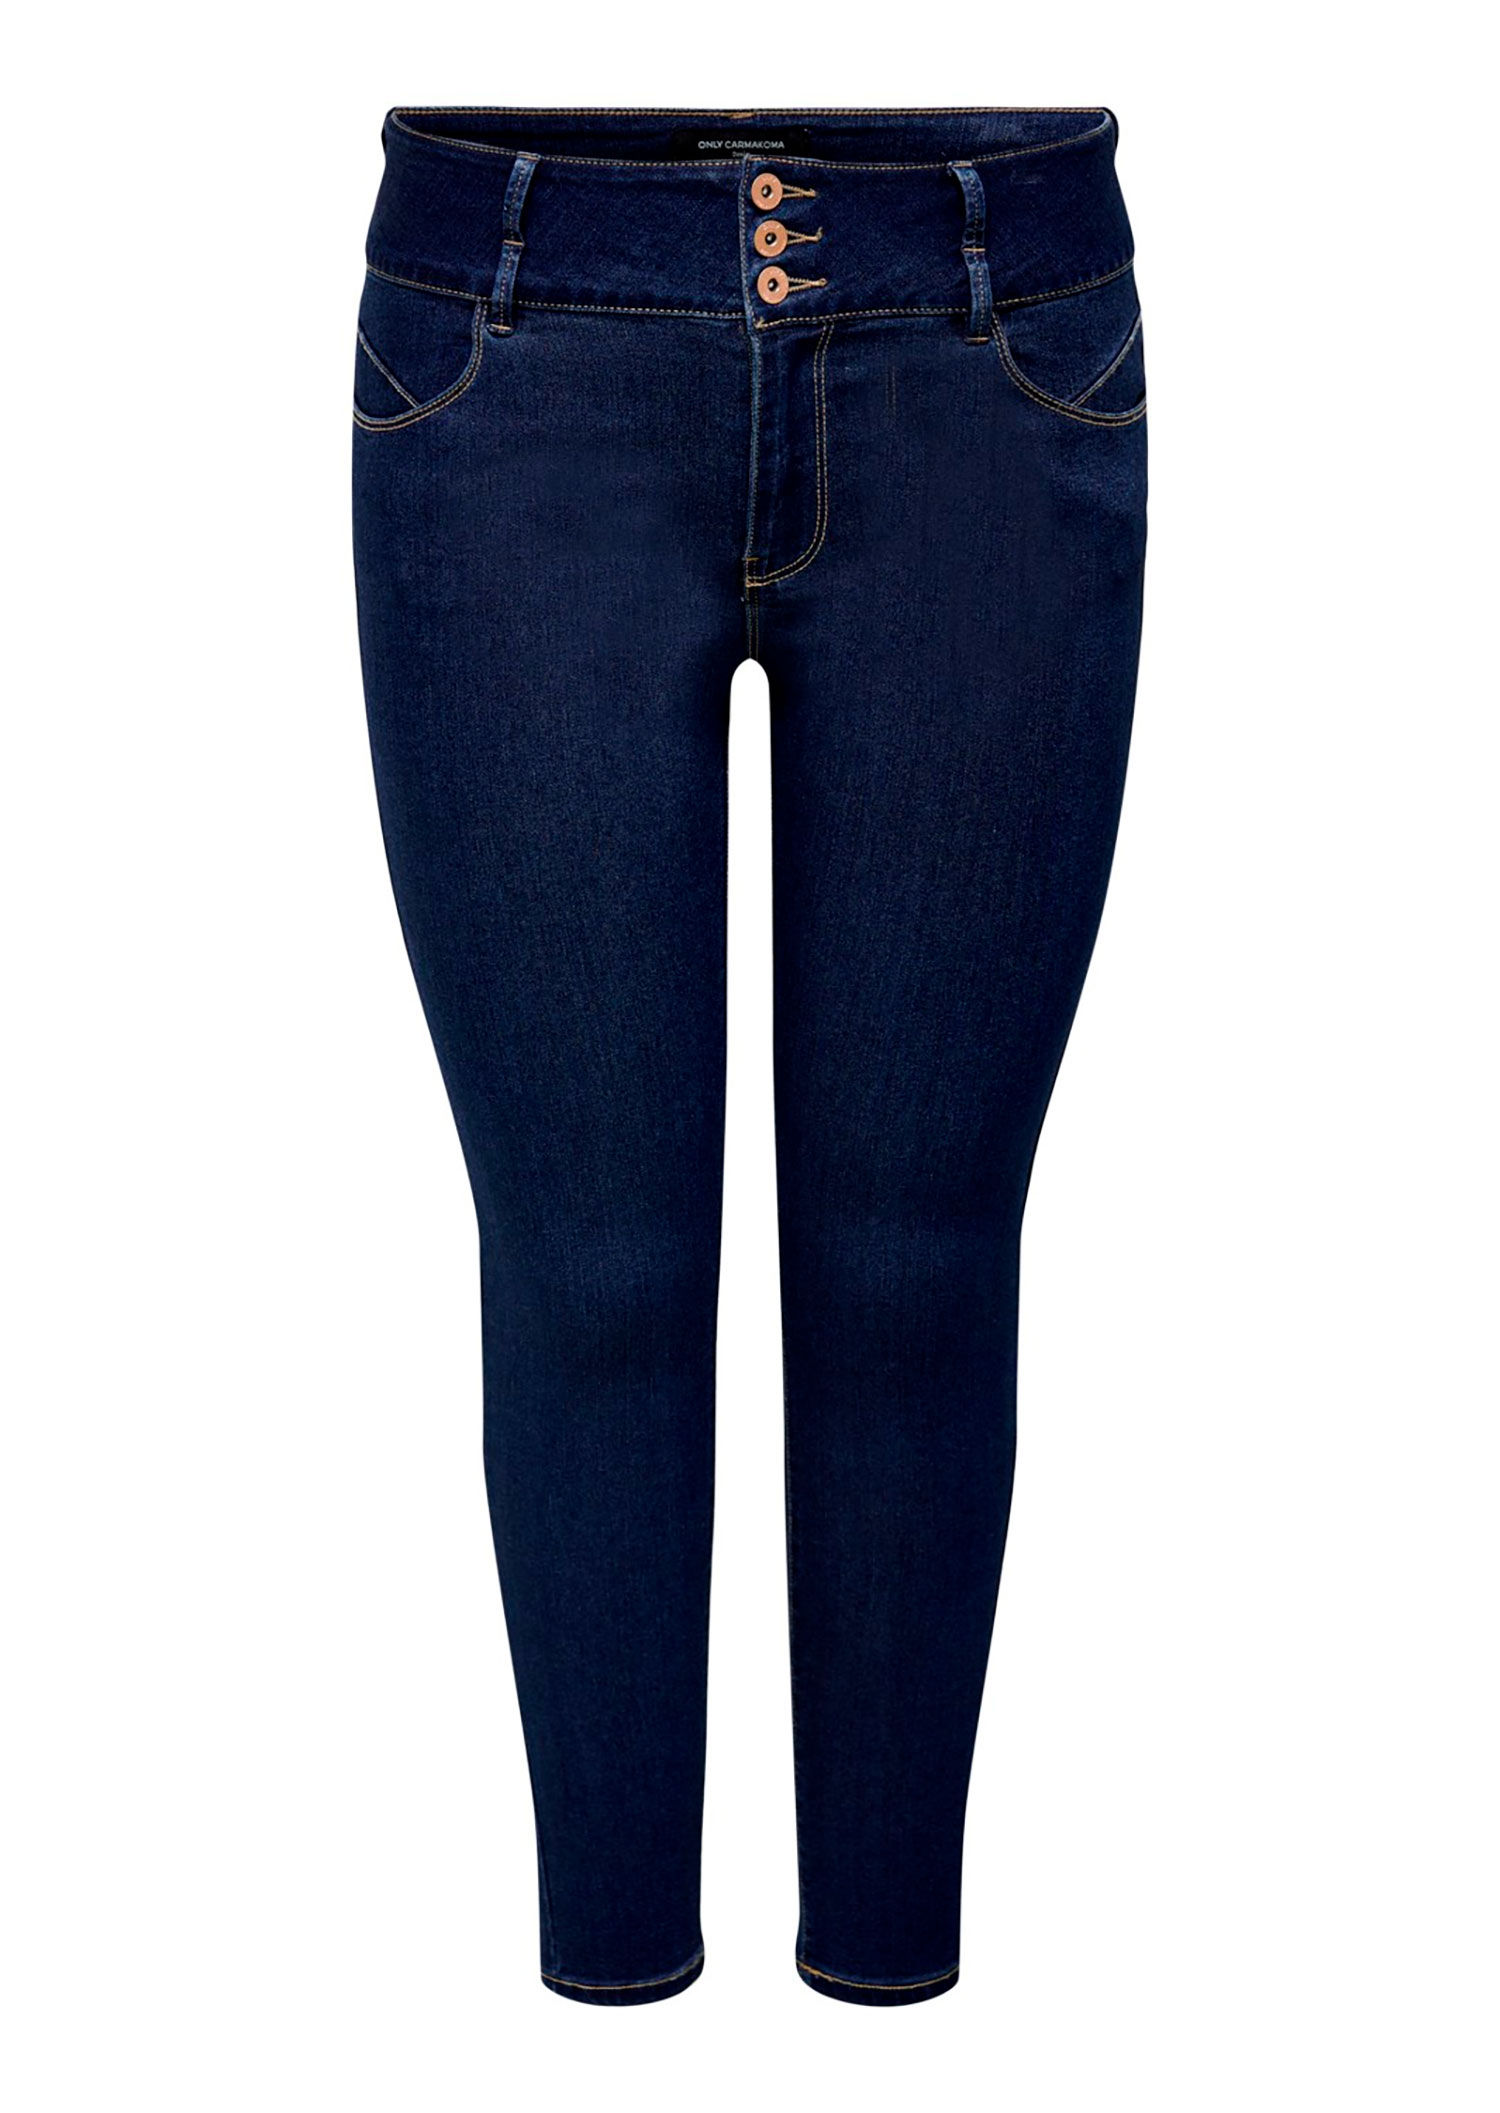 Car ANNA - Mørkeblå super stretch jeans med 3 knapper og smale ben fra Only Carmakoma